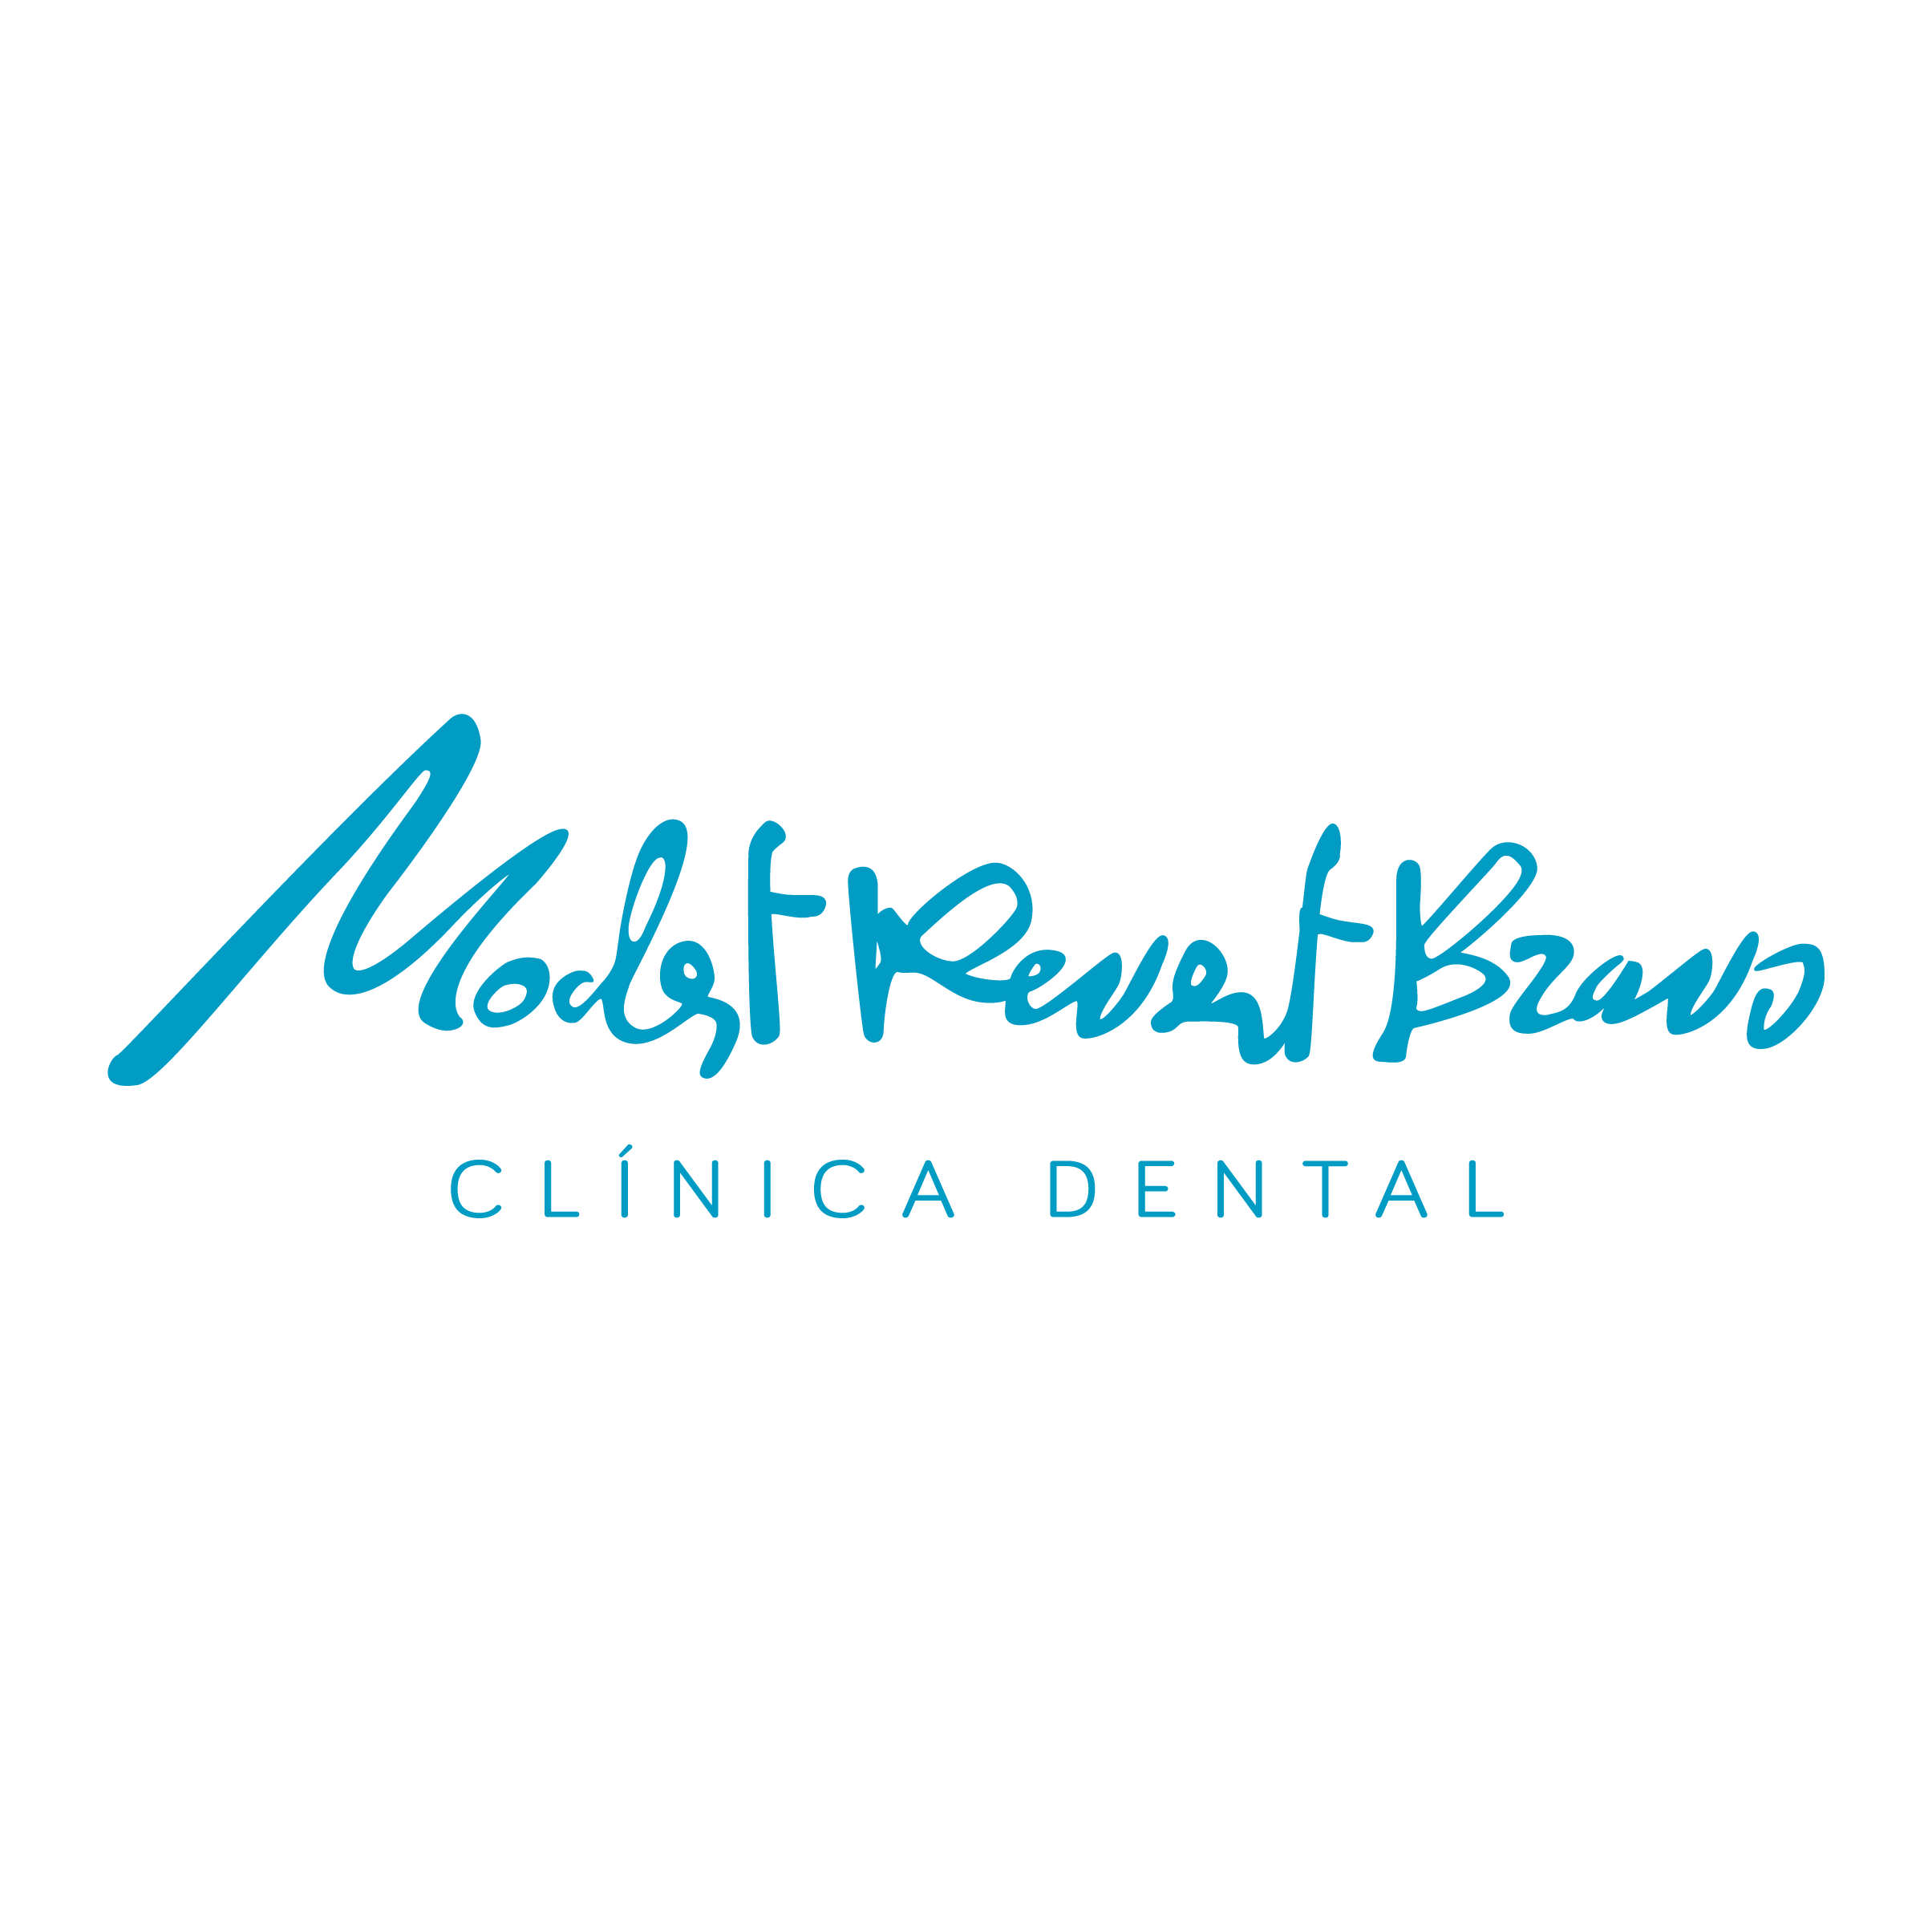 Clínica Dental Modest Revert i Bravo Valencia